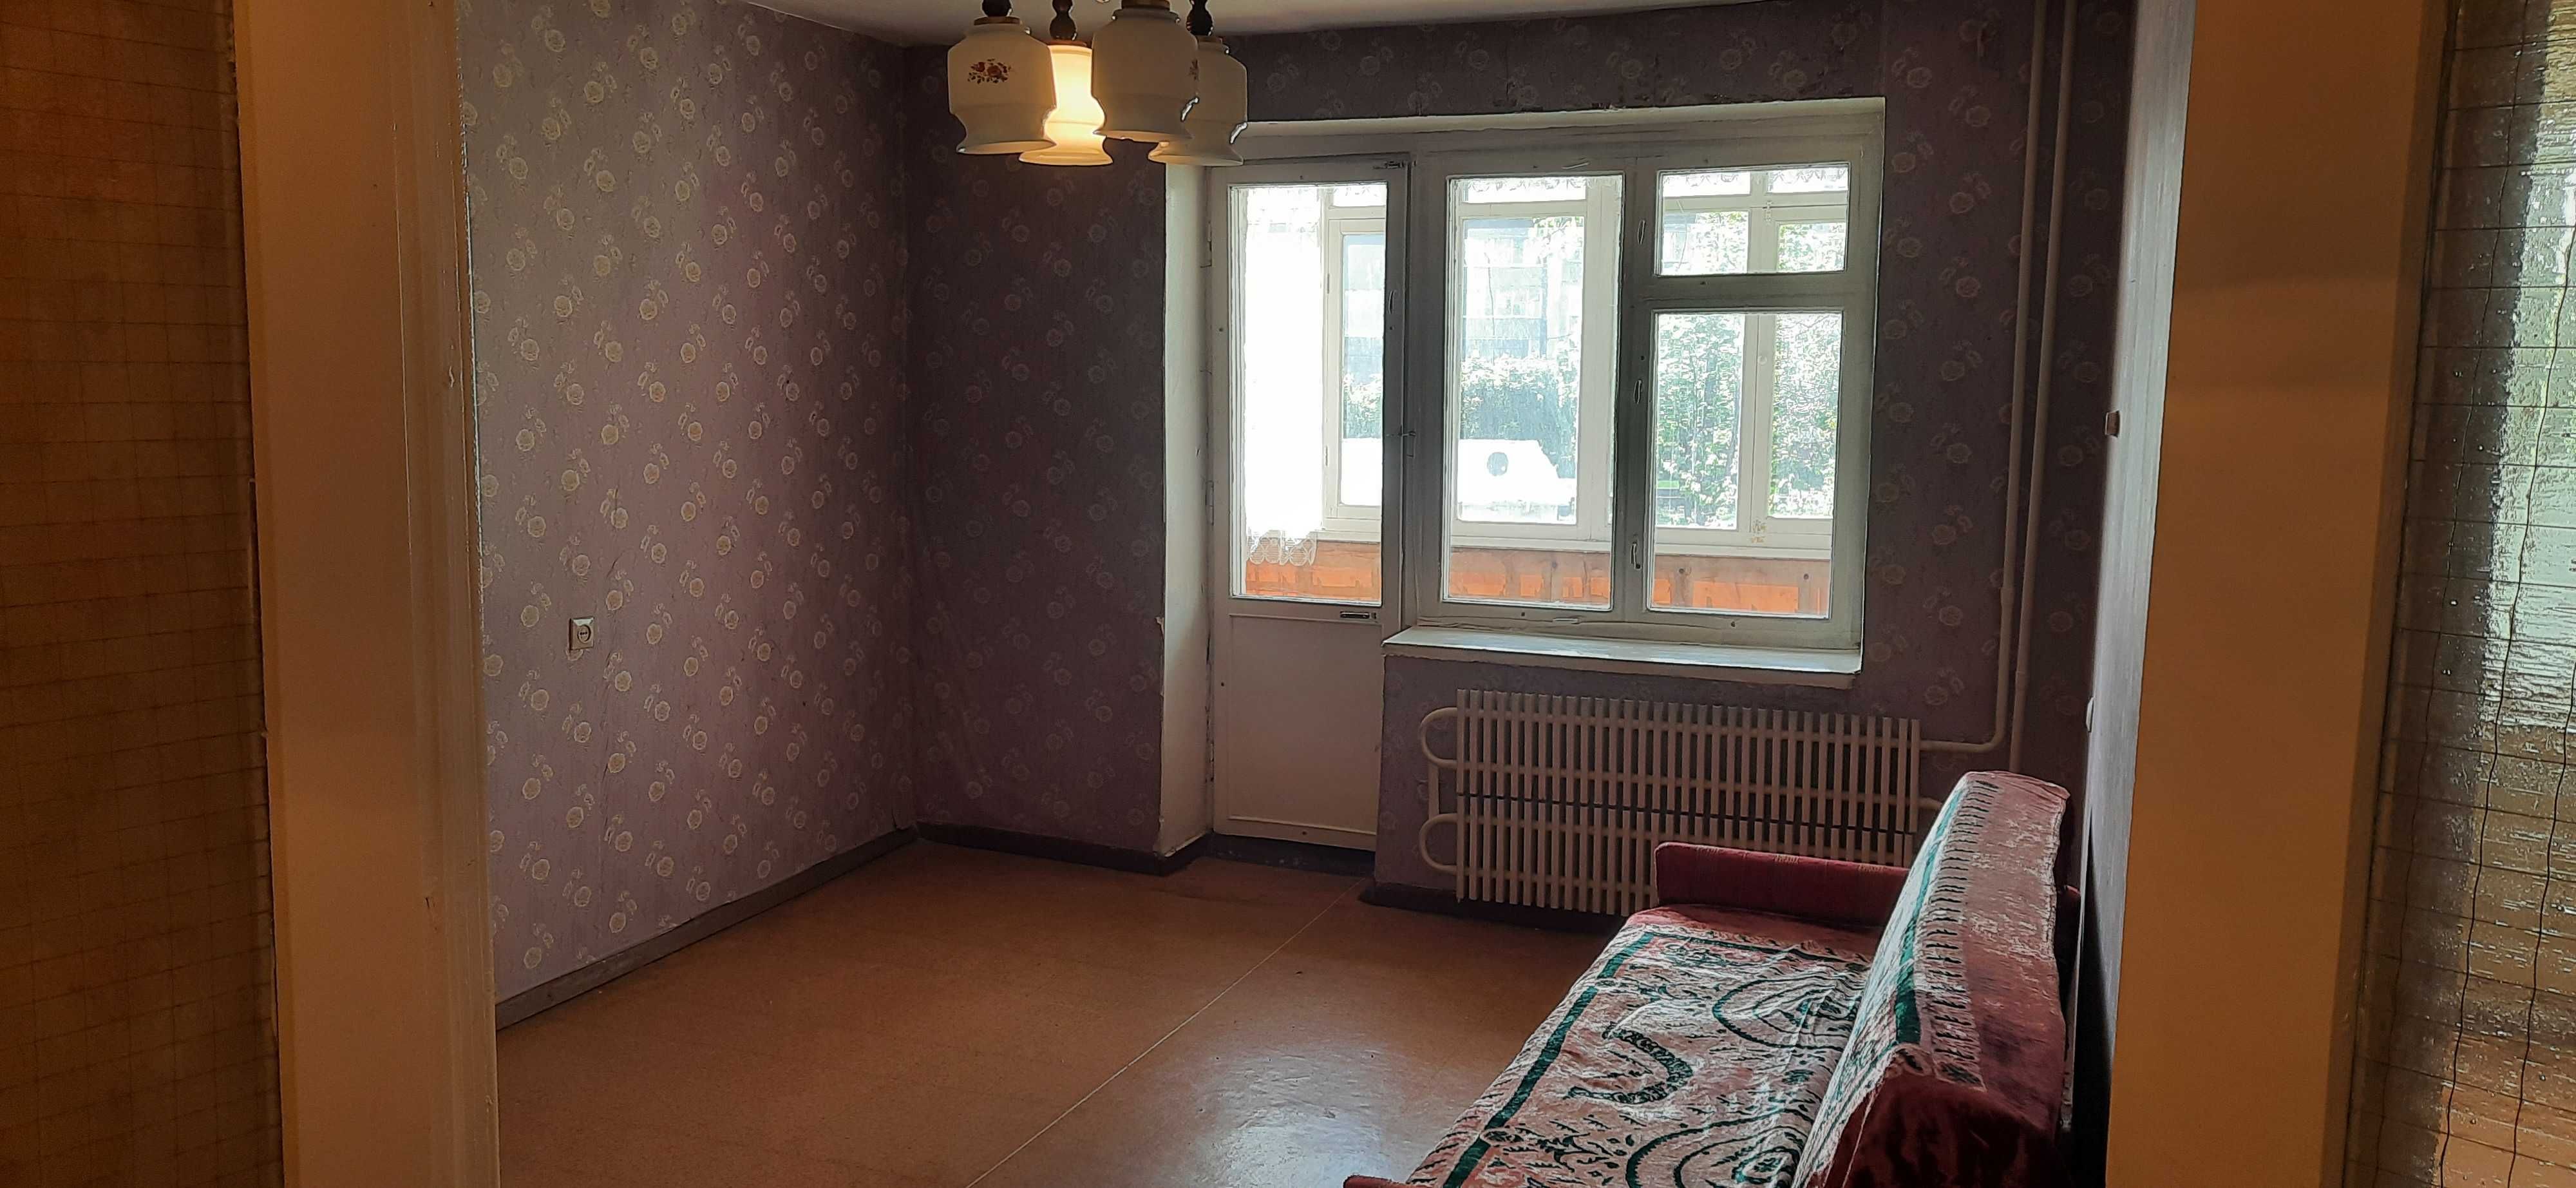 Продається 1-кімнатна квартира в центрі міста Шостка